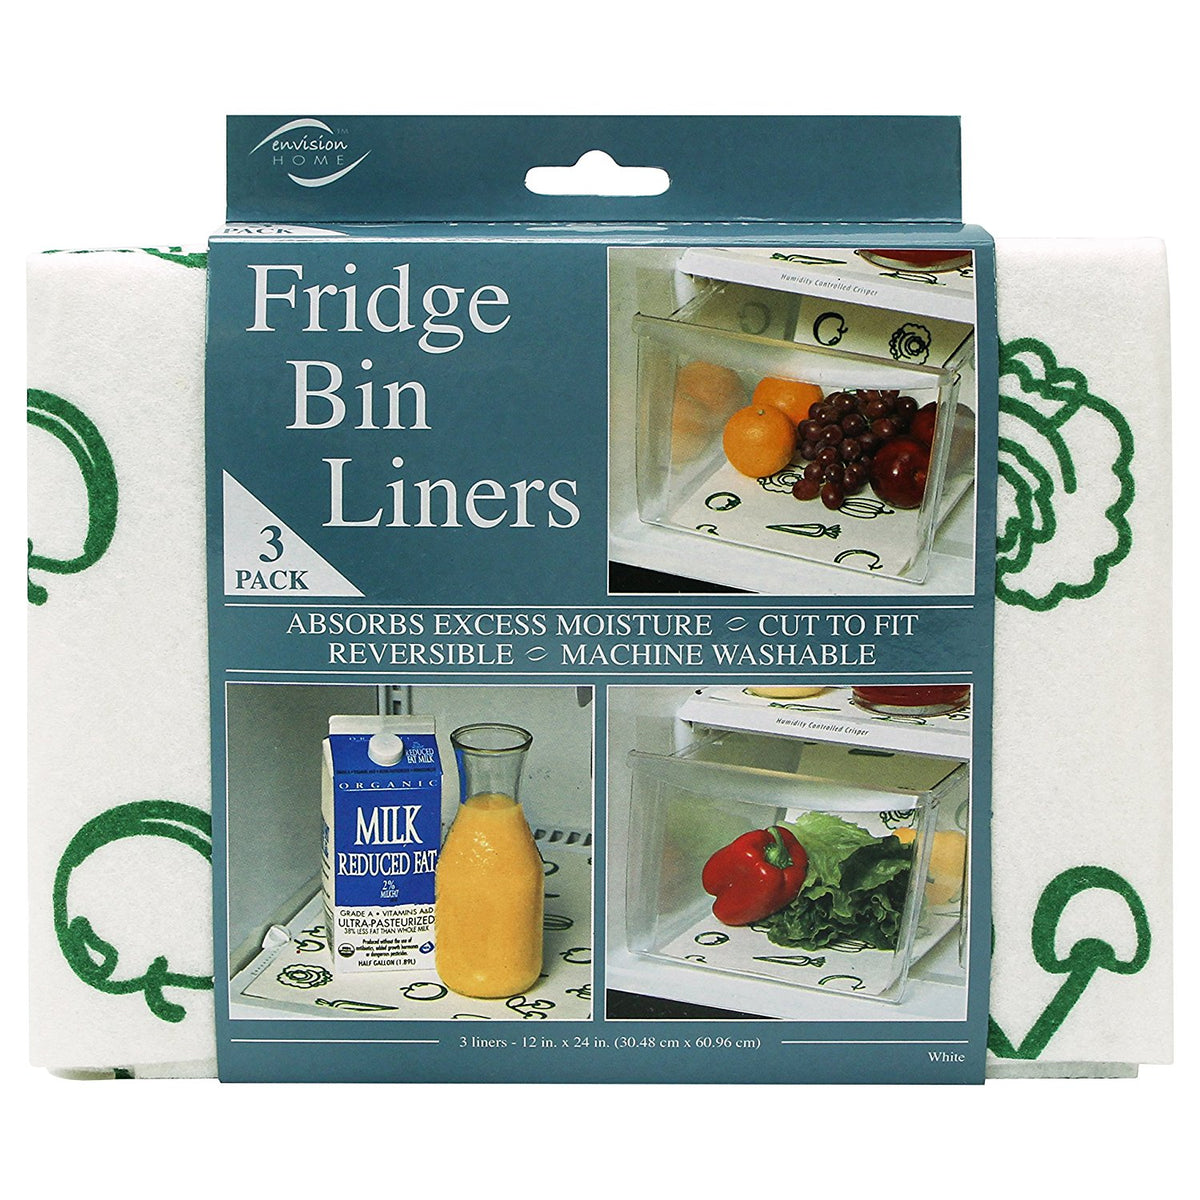 Fridge Bin Liners